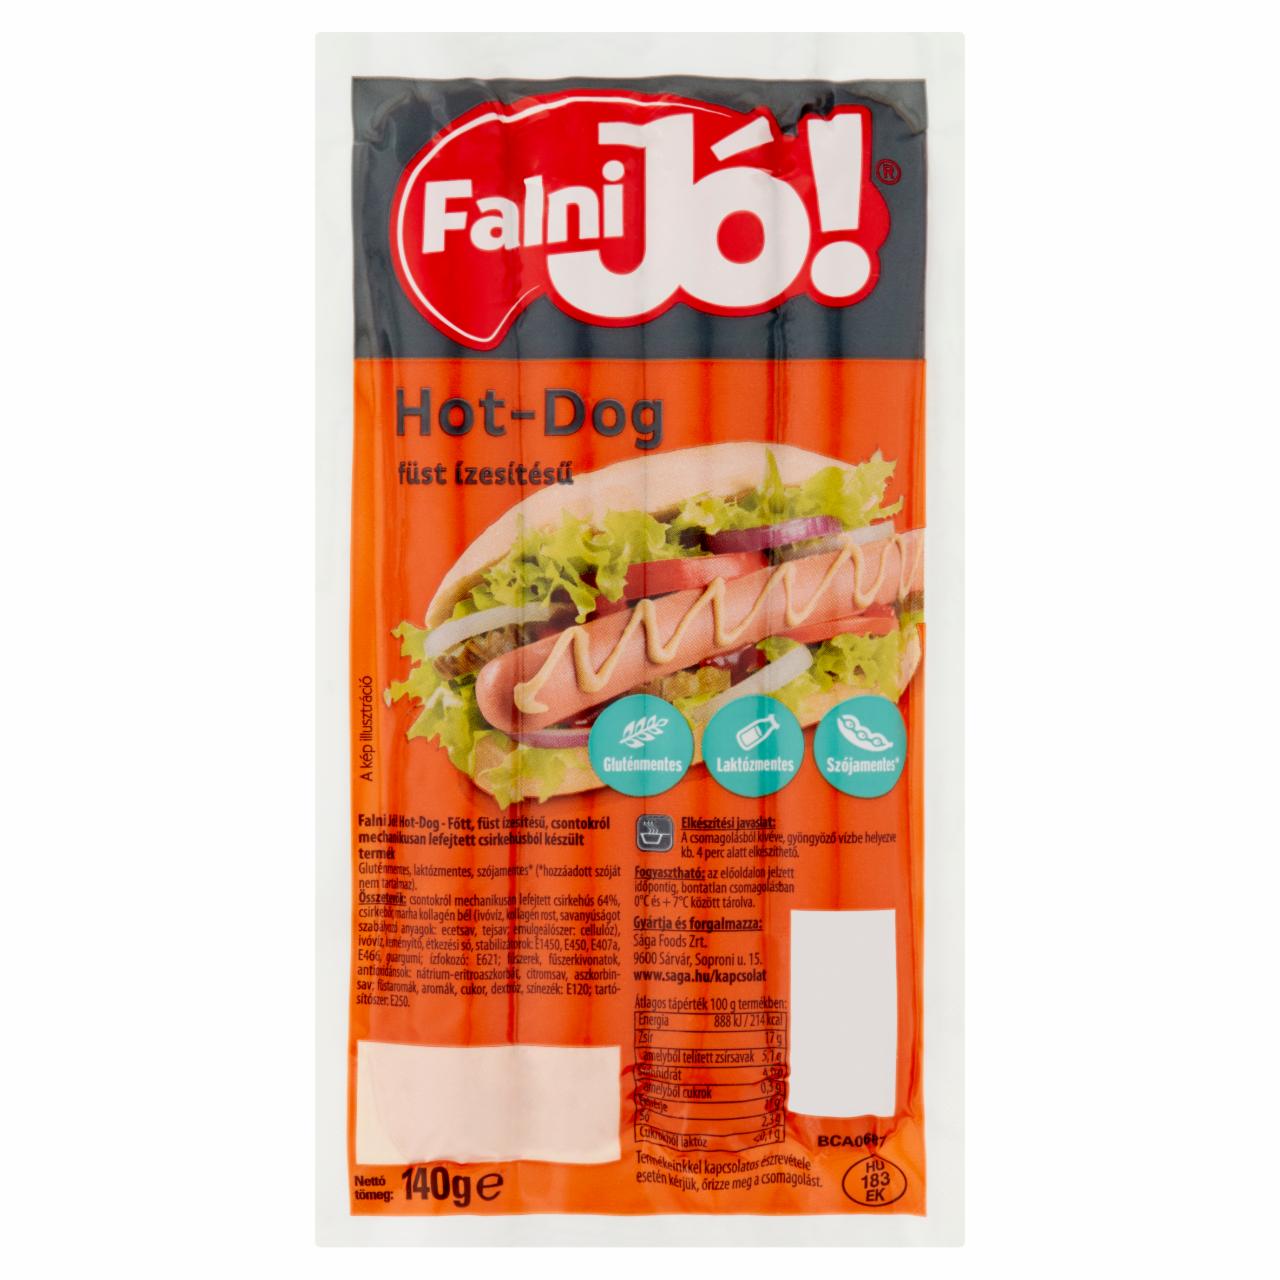 Képek - Falni Jó! füst ízesítésű hot-dog 140 g